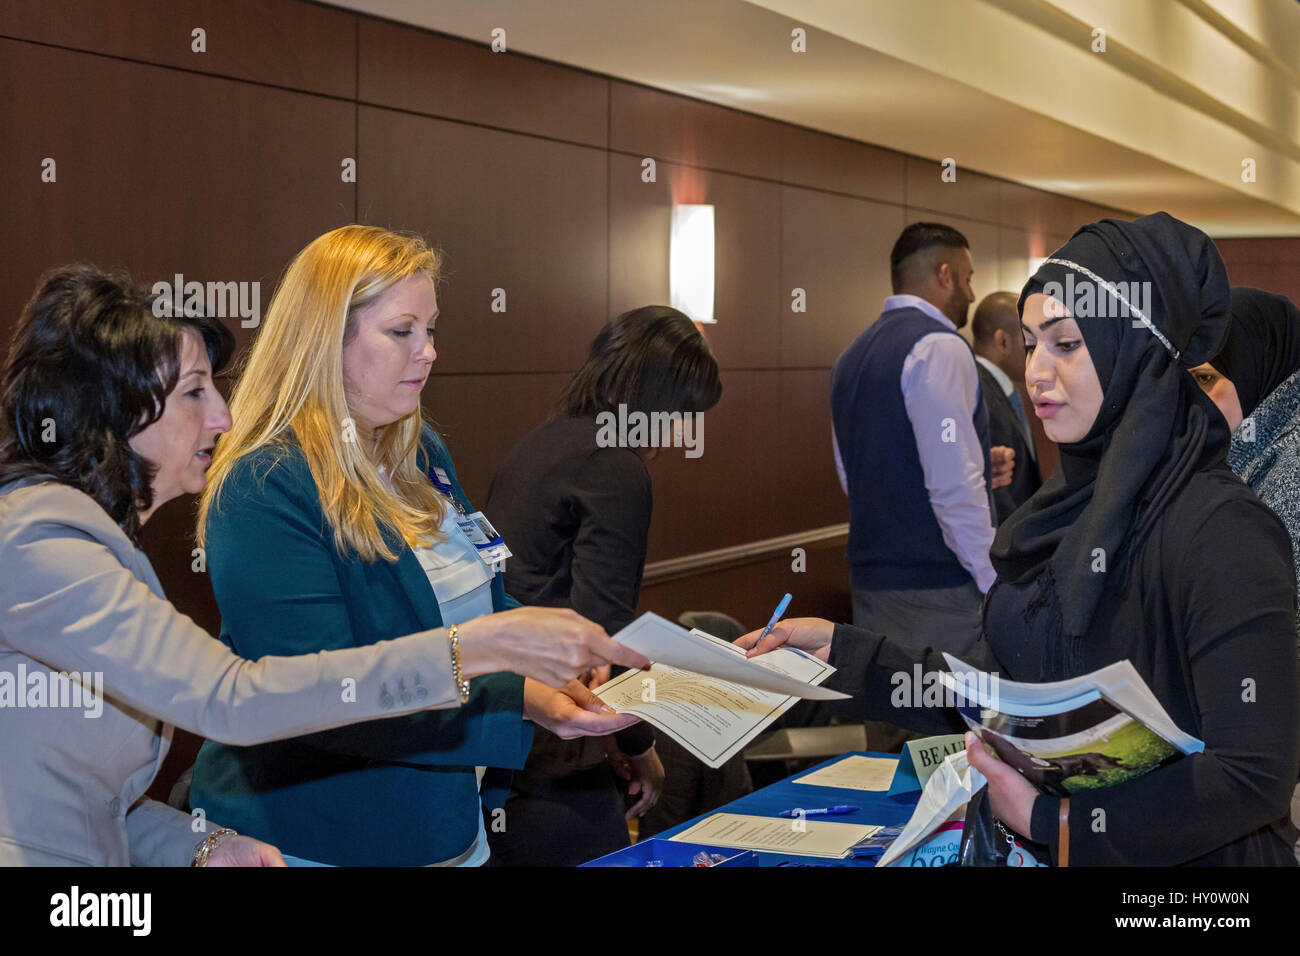 Dearborn, Michigan - Selezionatori per Beaumont Hospital di parlare a un lavoro seekeer a una fiera del lavoro sponsorizzato da accesso, la Comunità Araba centro economico Foto Stock